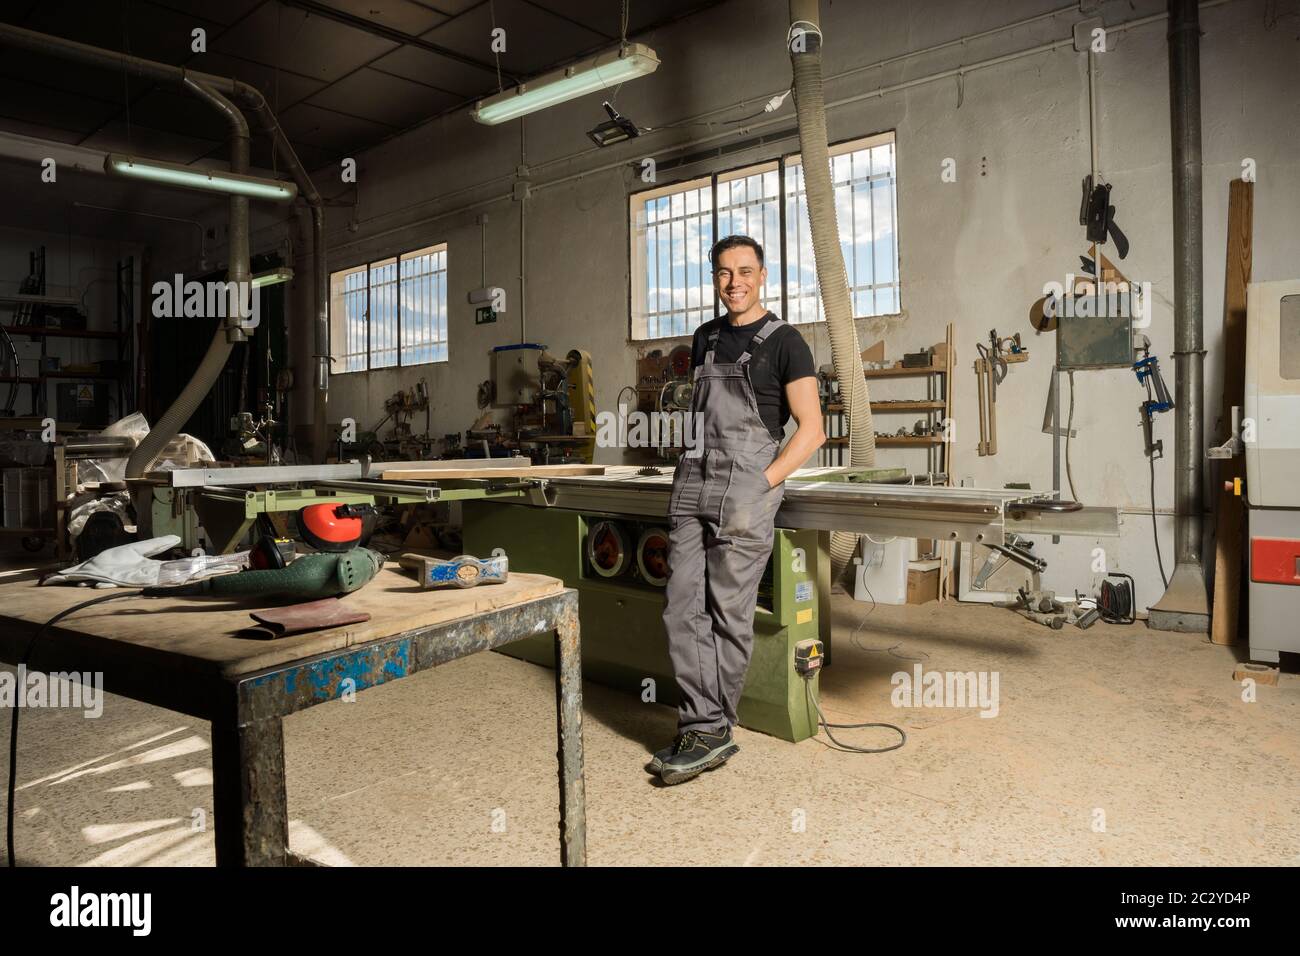 Un employé qui regarde la caméra sourire dans une usine. Photo longue, corps entier. Banque D'Images